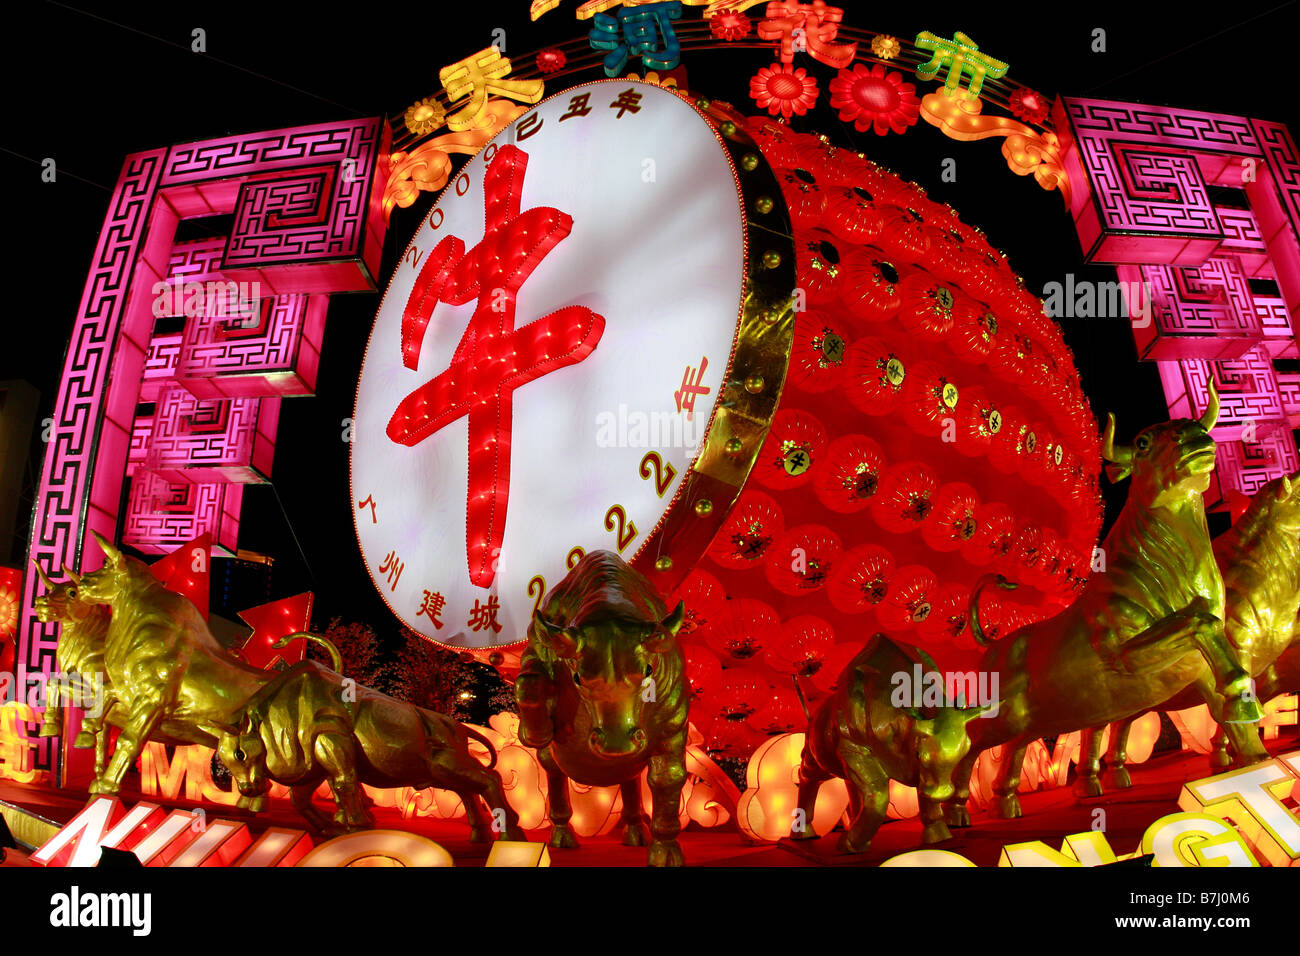 Entrée au marché aux fleurs 2009 Célébration du Nouvel An lunaire de la propagande sur la croissance de l'économie de la Chine Banque D'Images